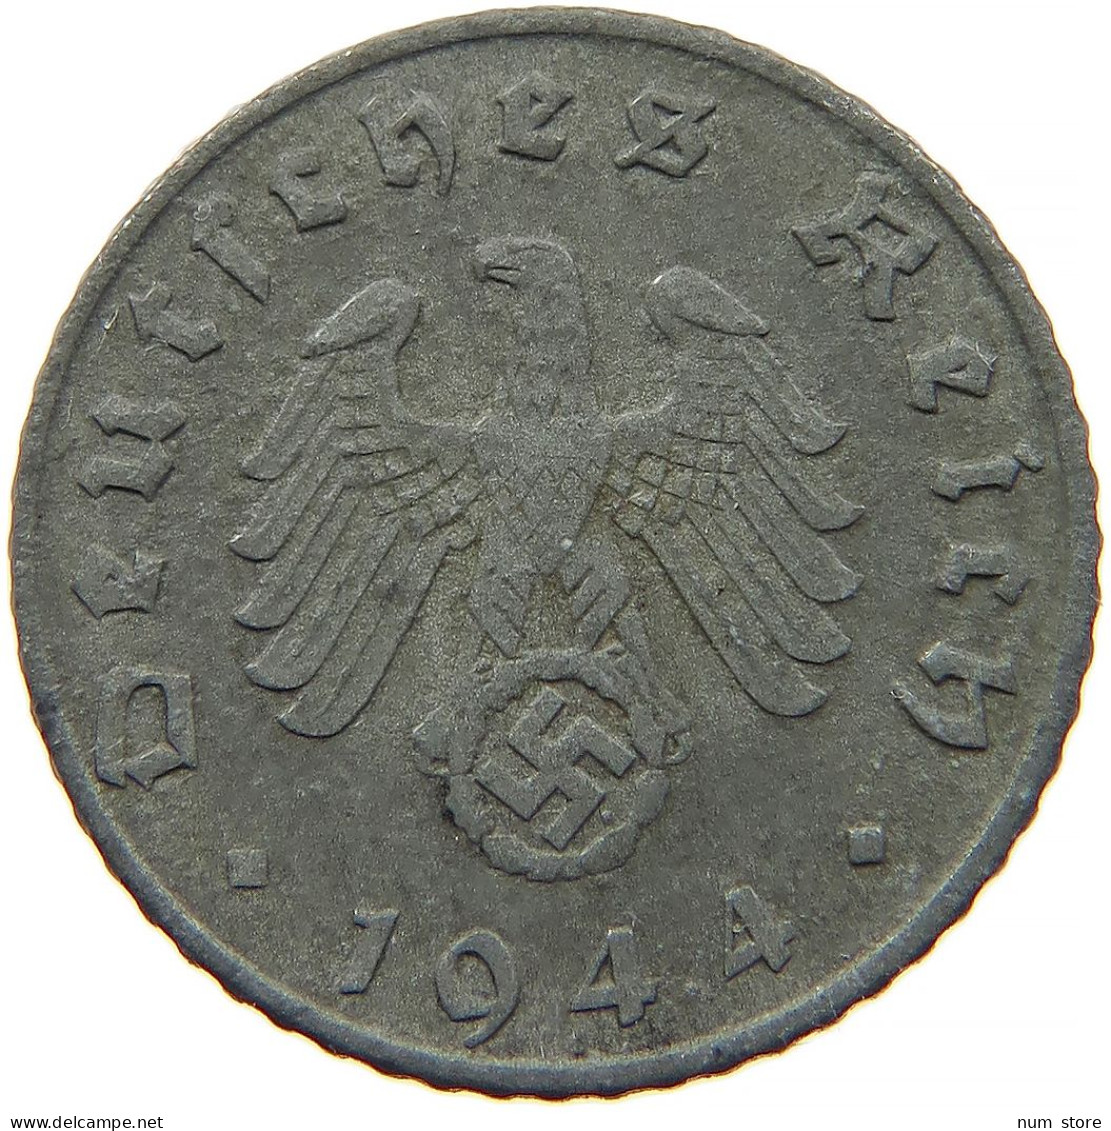 GERMANY 5 REICHSPFENNIG 1944 F #s091 0827 - 5 Reichspfennig